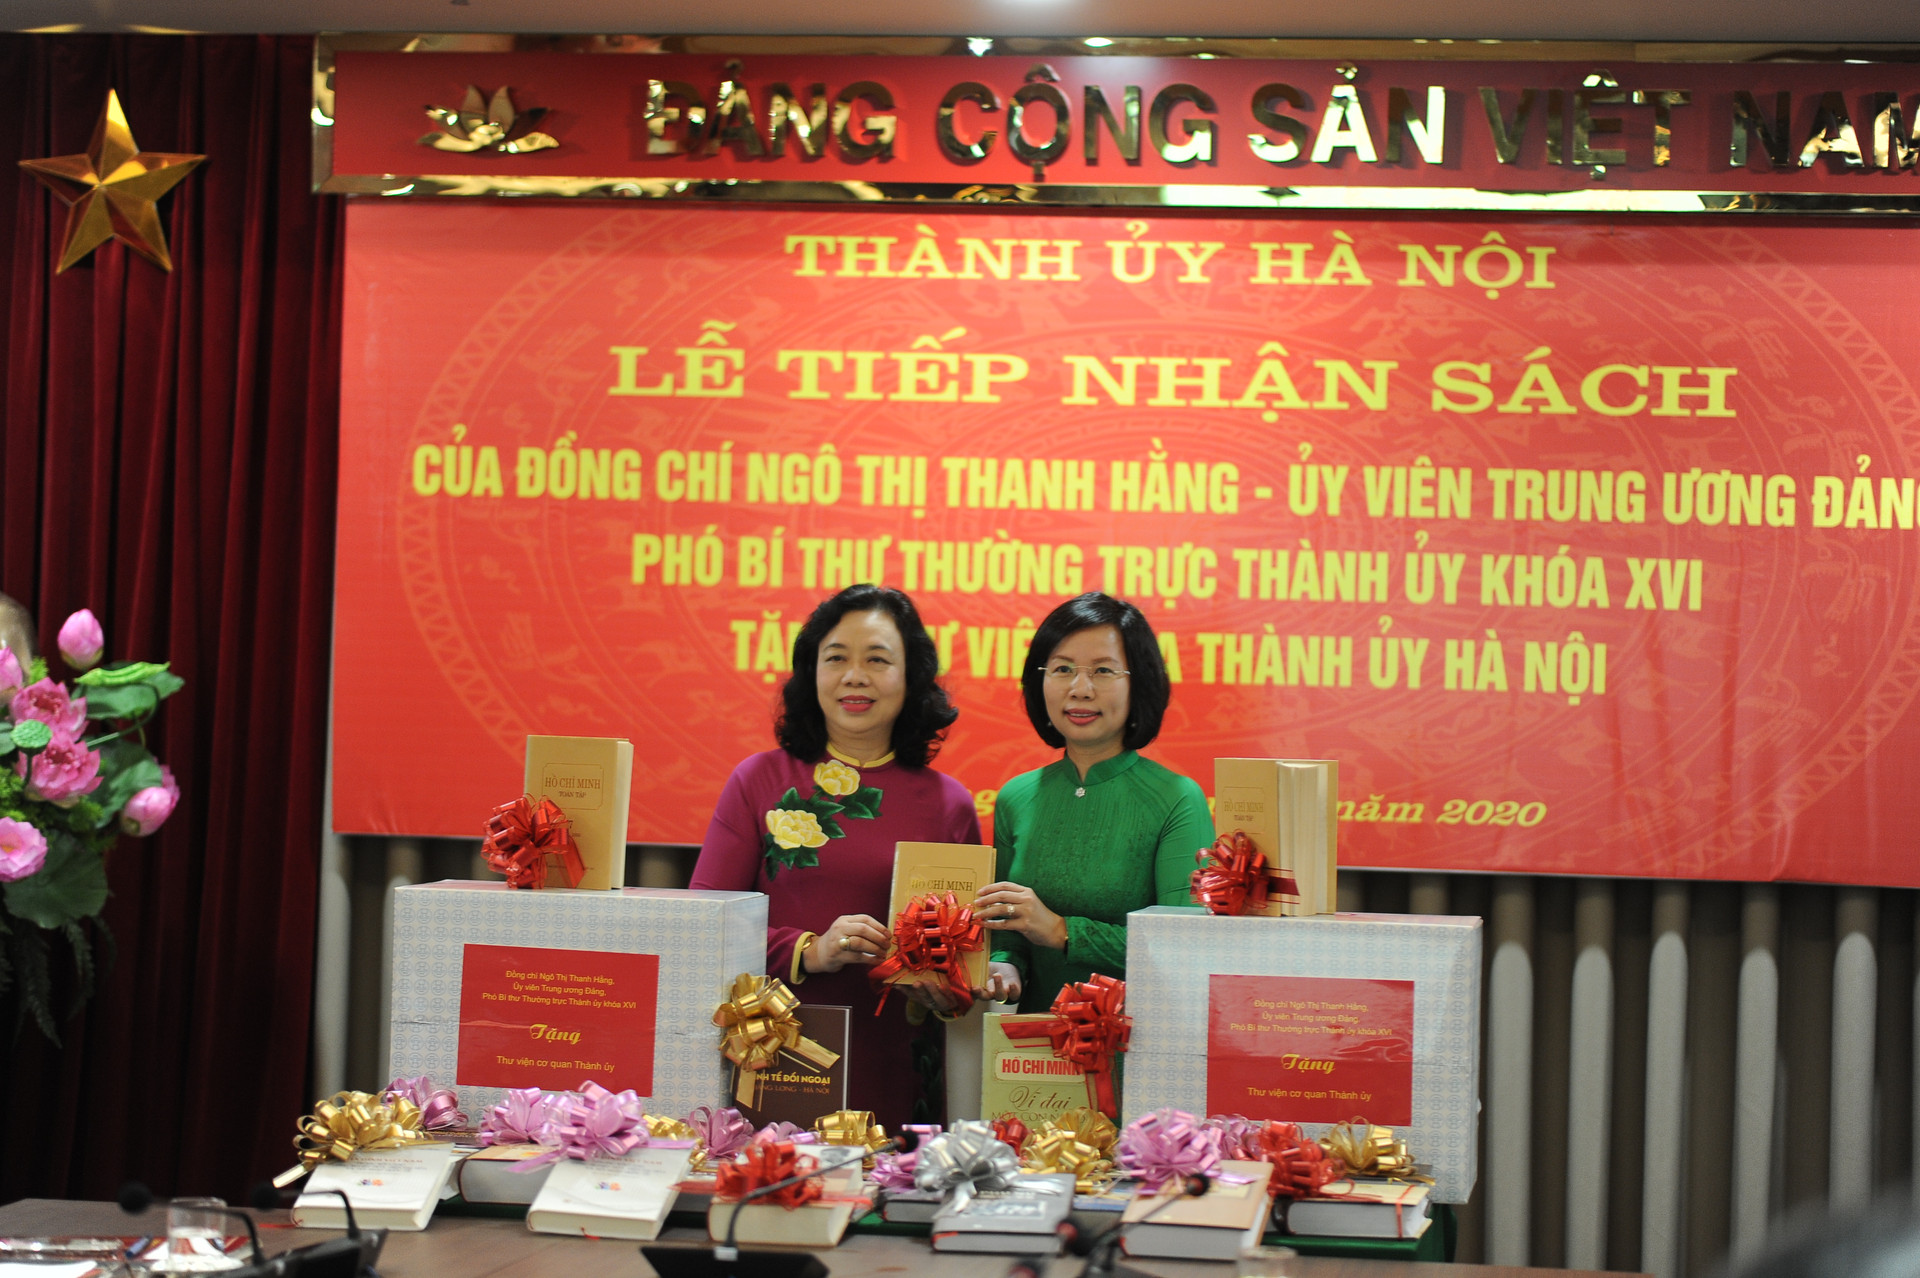 Nguyên Phó Bí thư Thường trực Thành ủy Ngô Thị Thanh Hằng gửi tặng gần 1000 cuốn sách cho thư viện Thành ủy Hà Nội